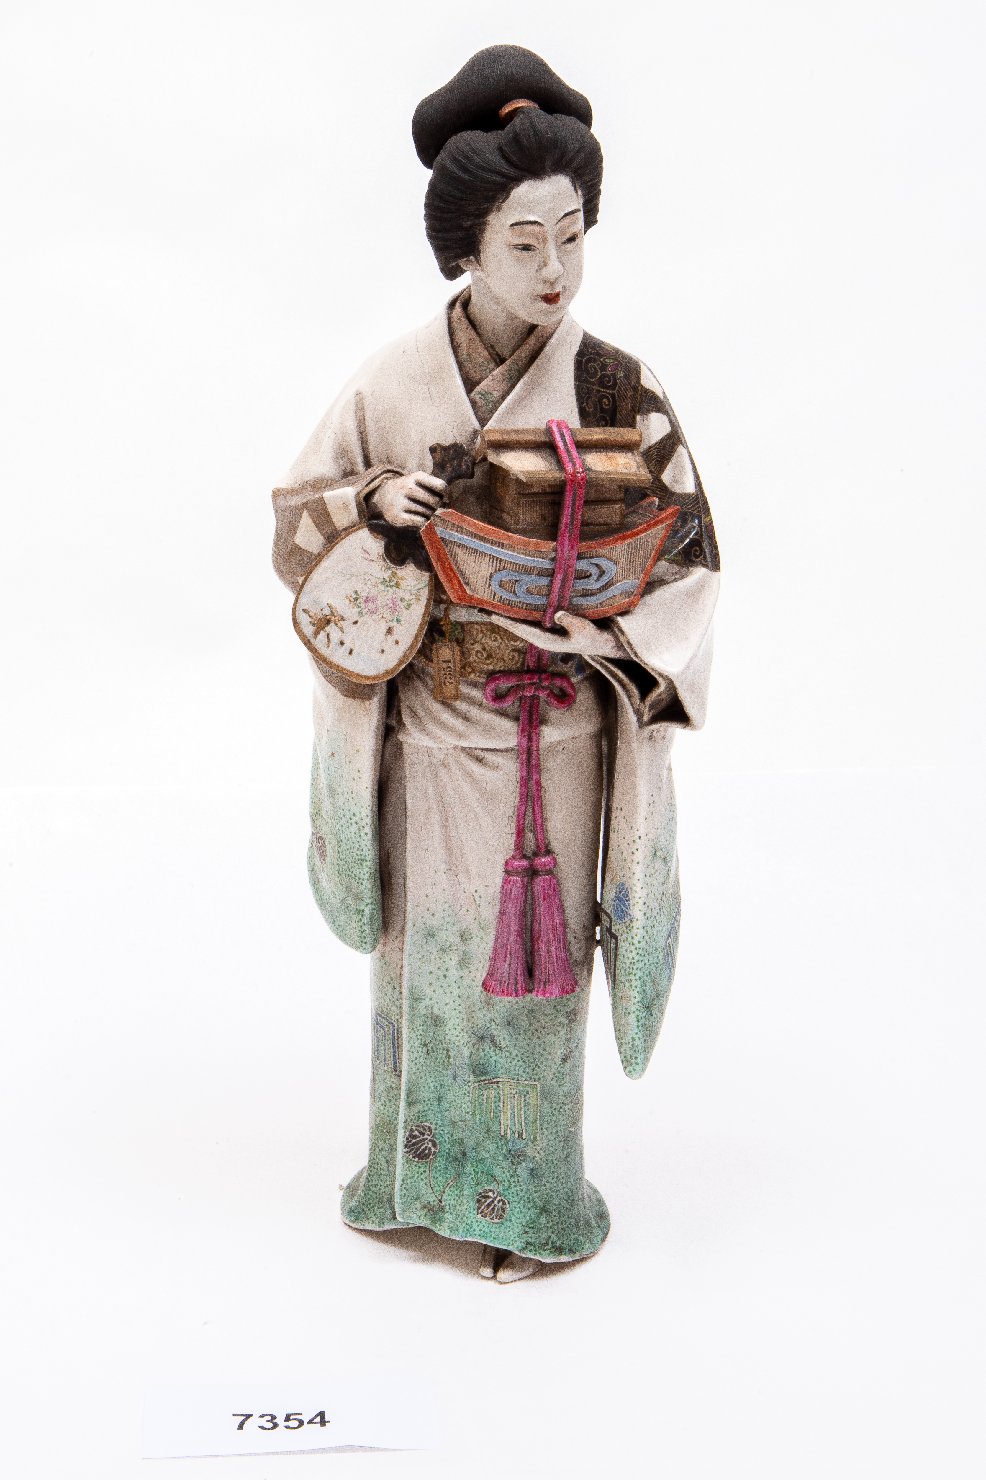 Ukifune (?), Fanciulla in kimono (statua) di Goraku 娯樂 (attribuito) - manifattura giapponese (XIX) <br>Condizioni d'uso: <a class='link-esterno' href='https://docs.italia.it/italia/icdp/icdp-pnd-circolazione-riuso-docs/it/v1.0-giugno-2022/testo-etichetta-BCS.html' target='_bcs'>Beni Culturali Standard (BCS)</a>